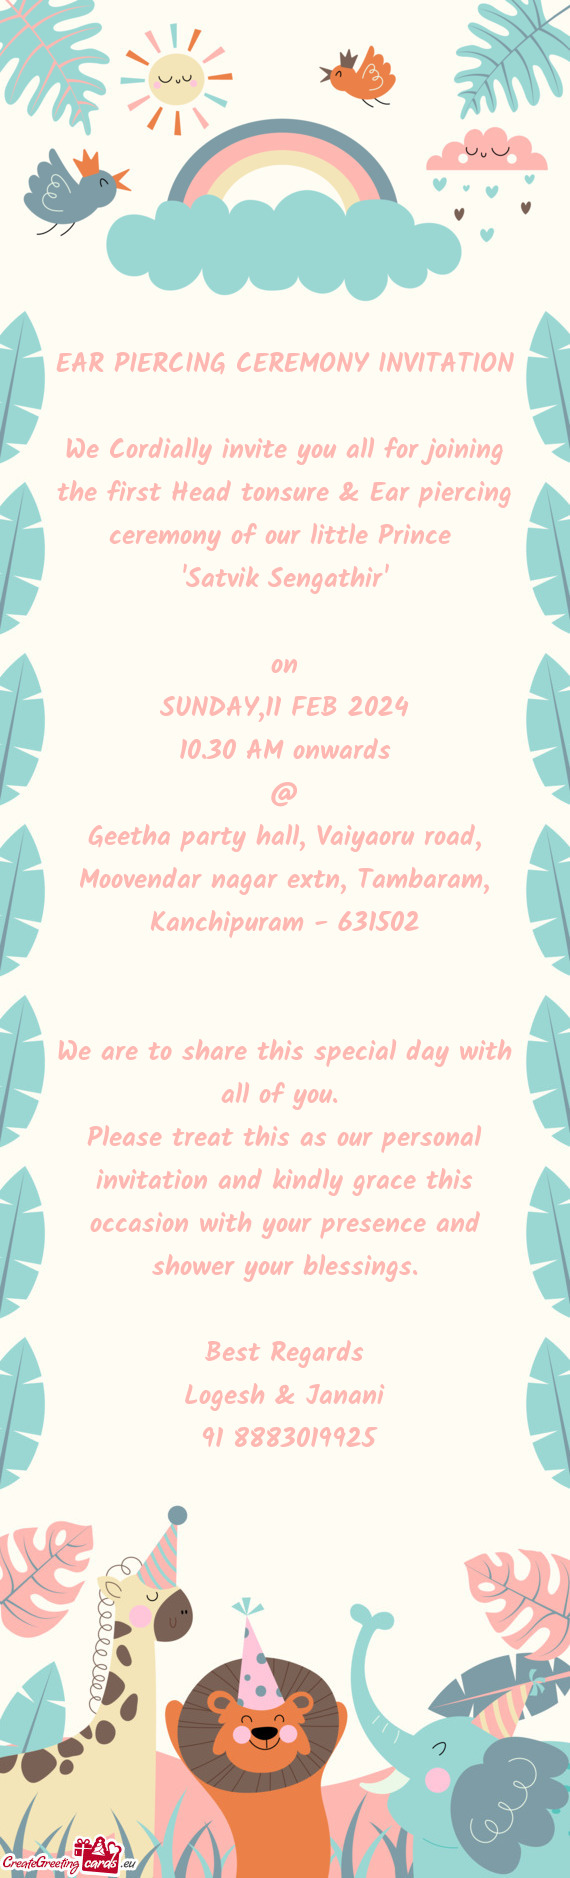 Geetha party hall, Vaiyaoru road